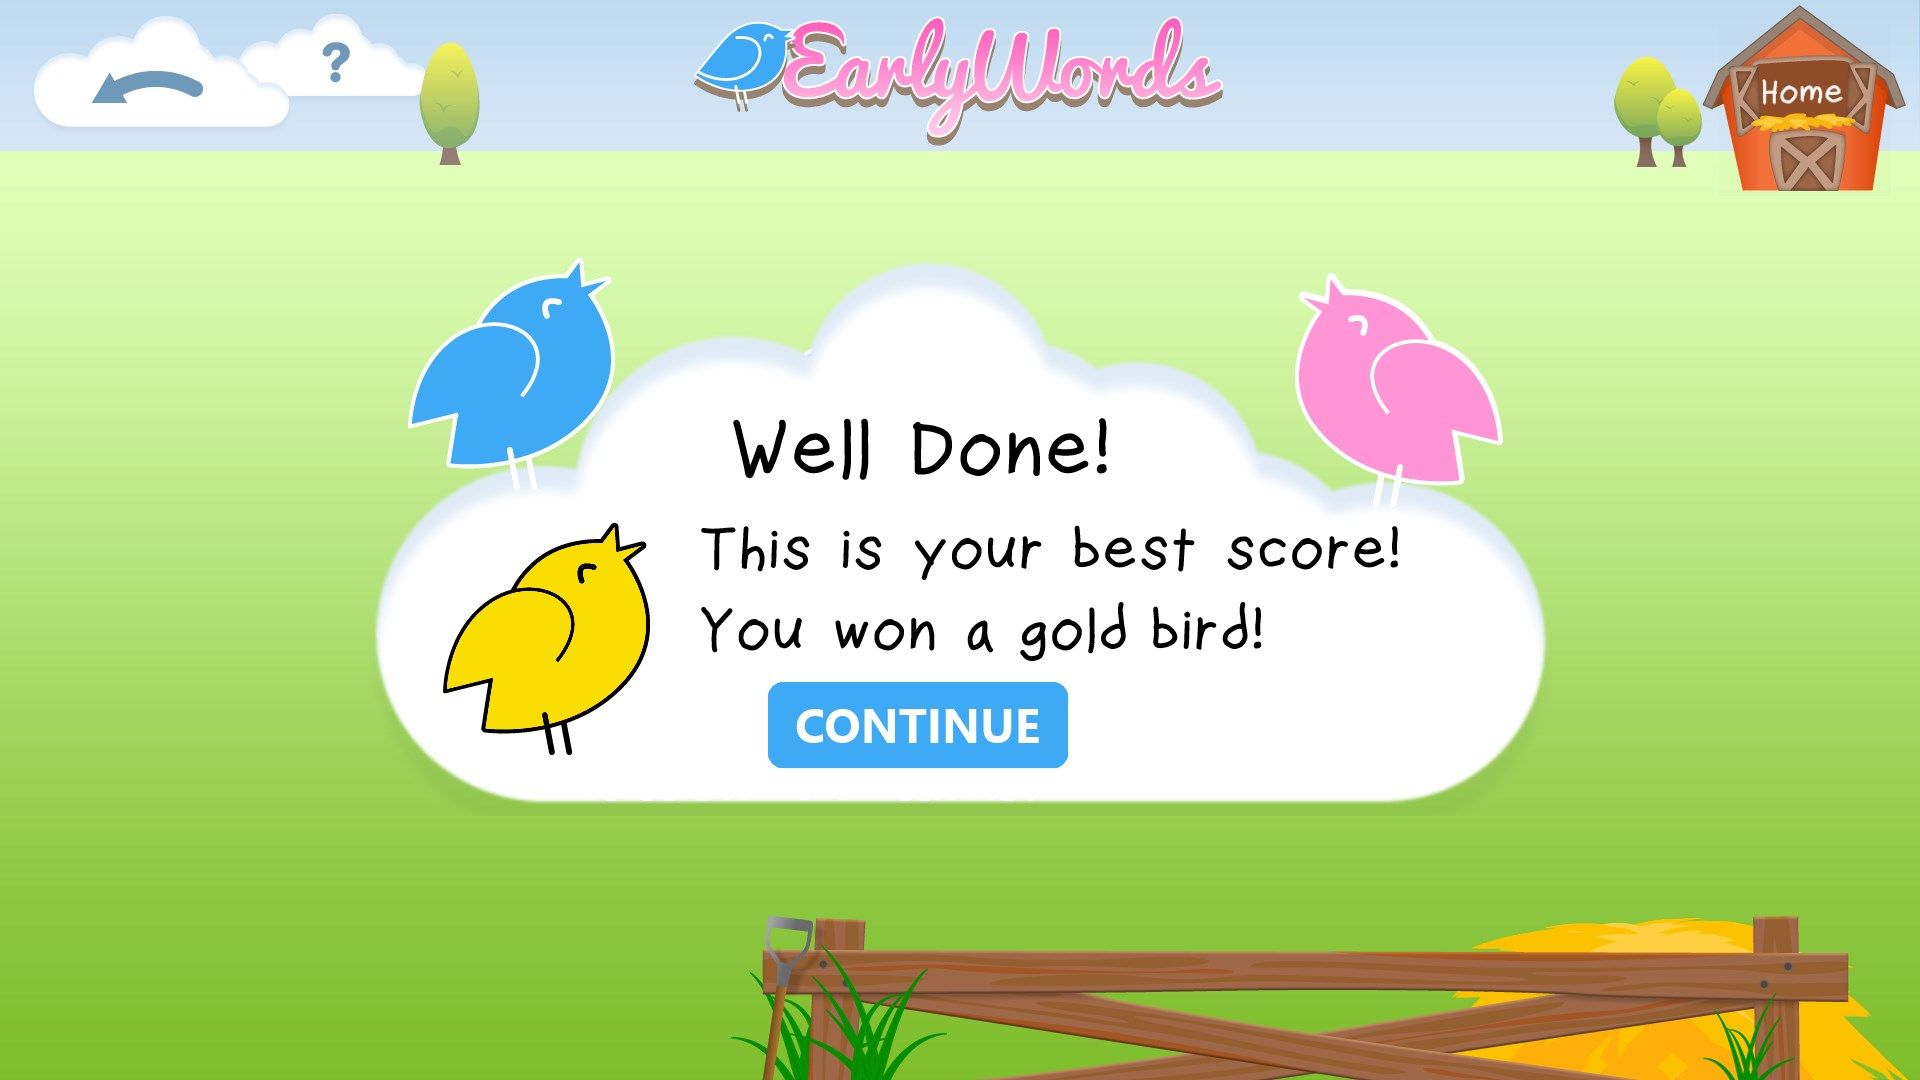 Earning a golden bird achievement